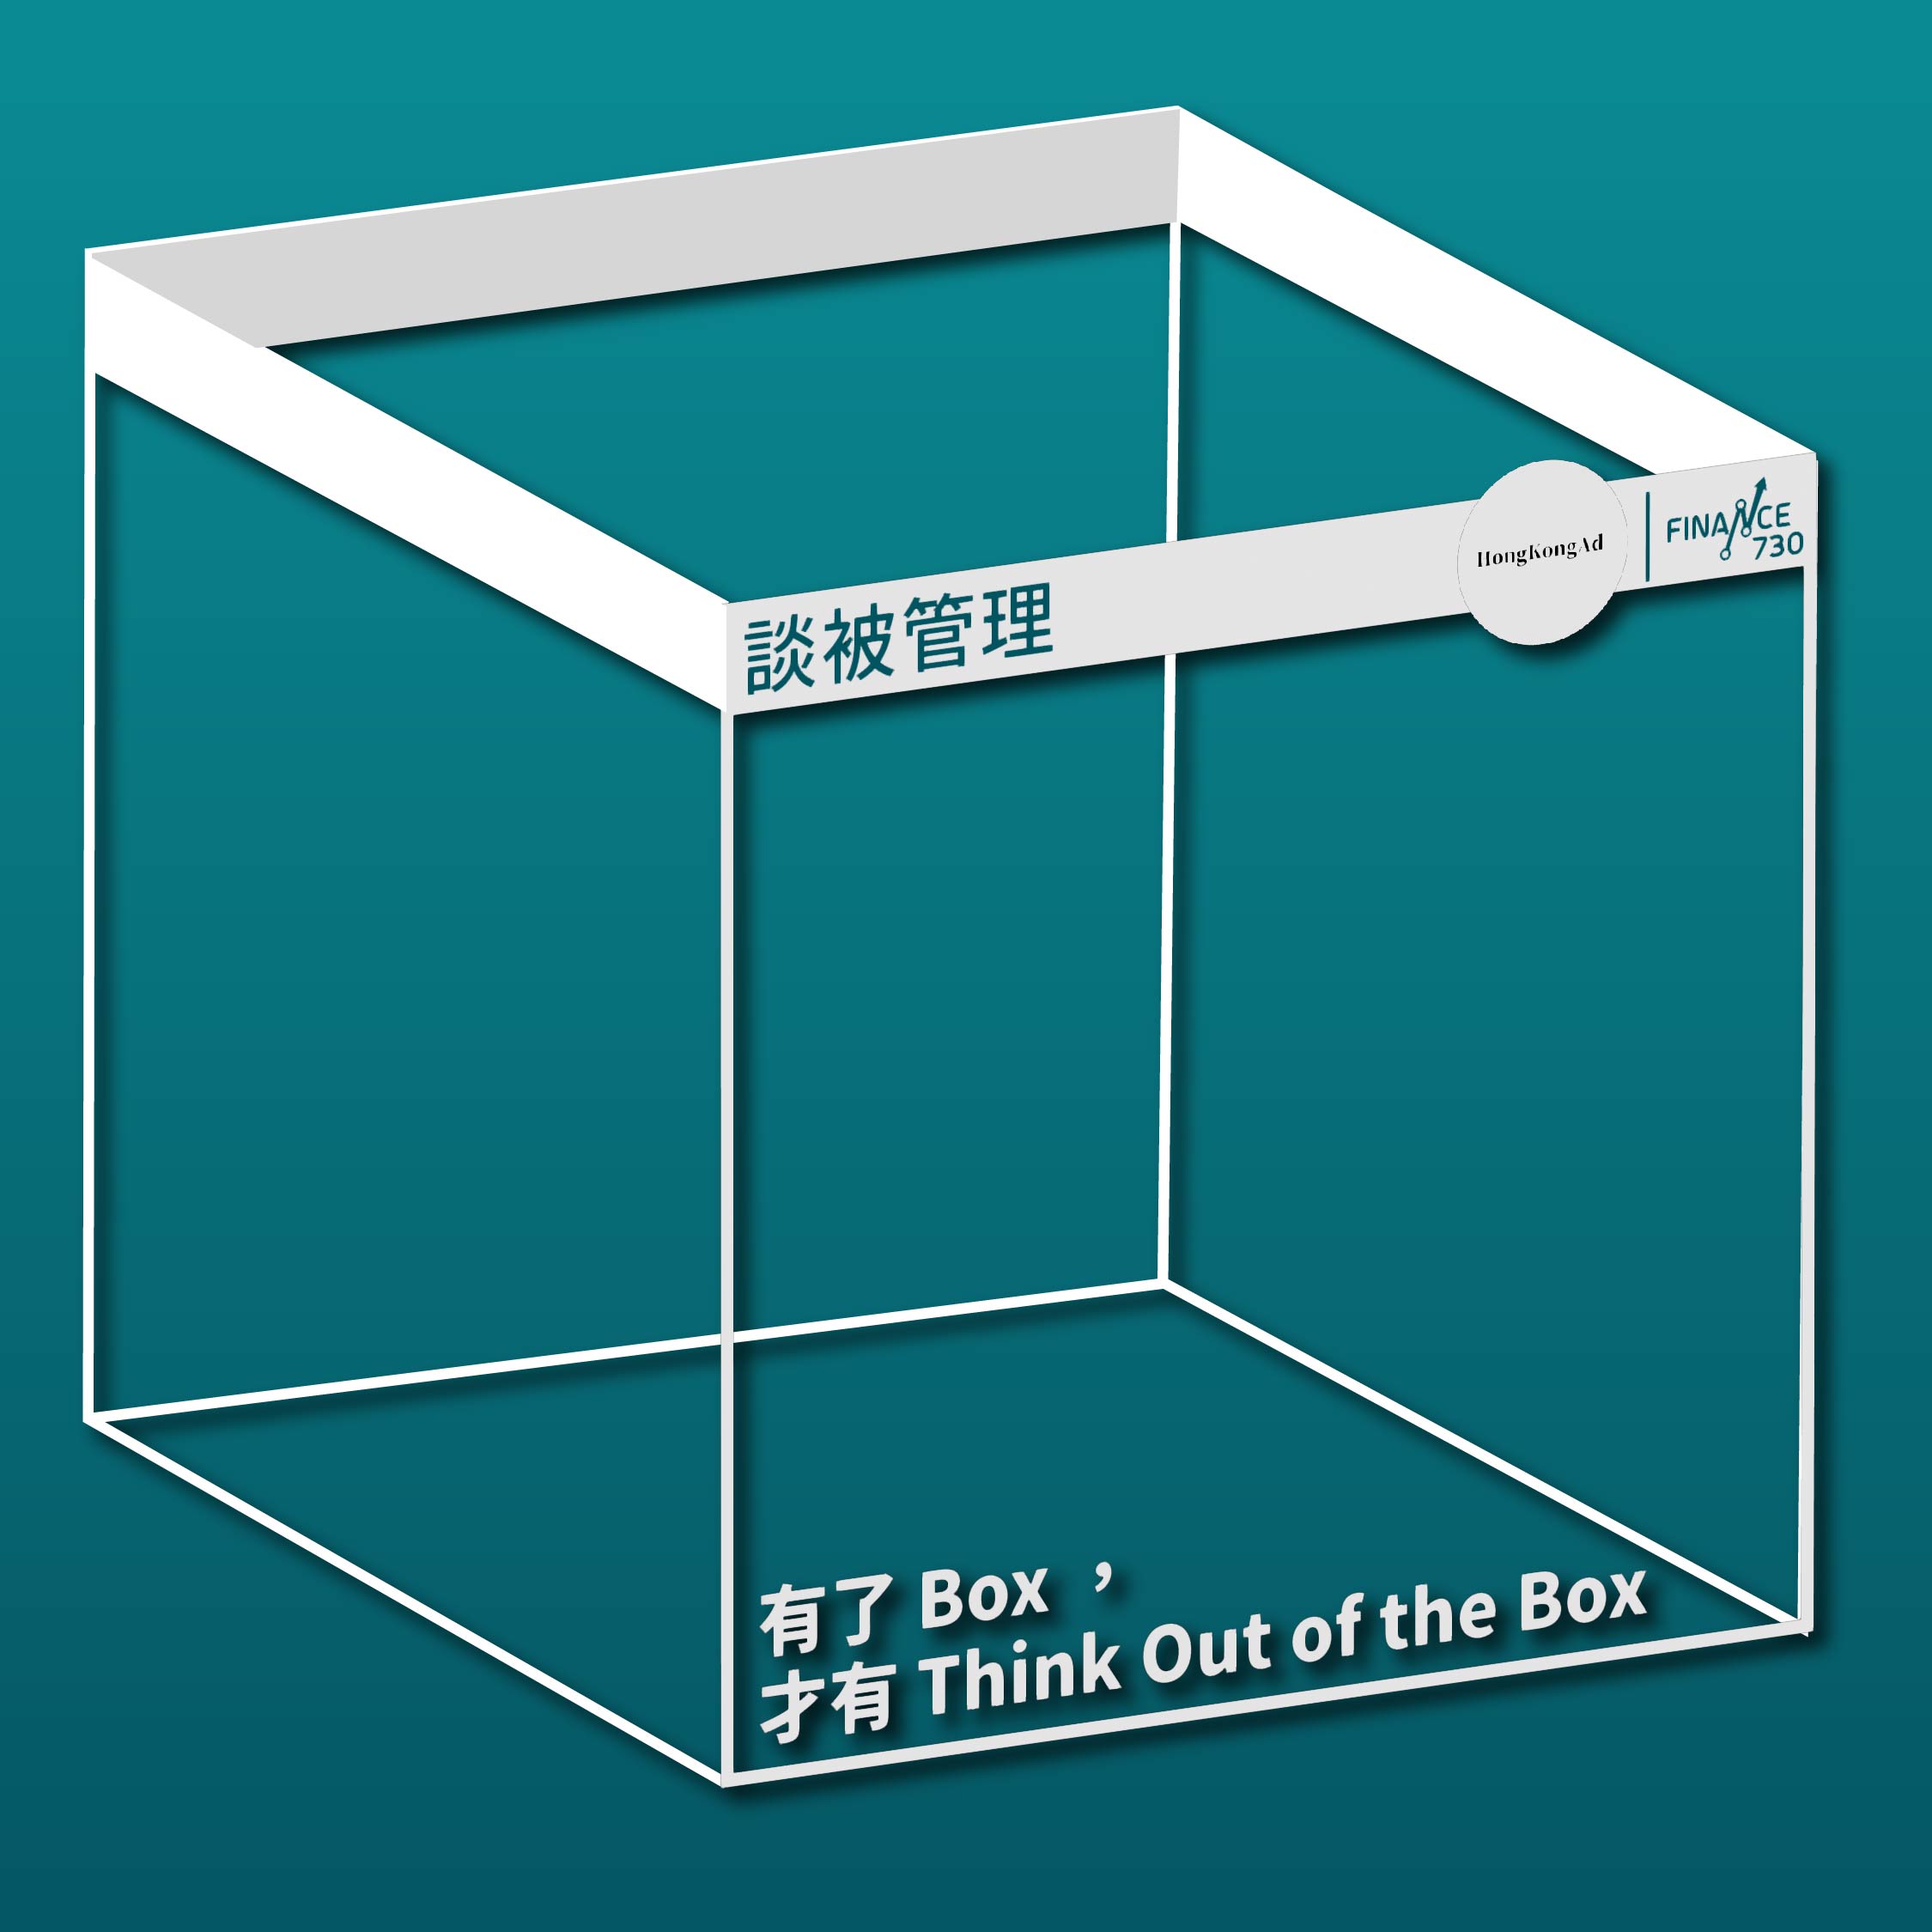 市場營銷-廣告師-Think-Out-of-the-Box